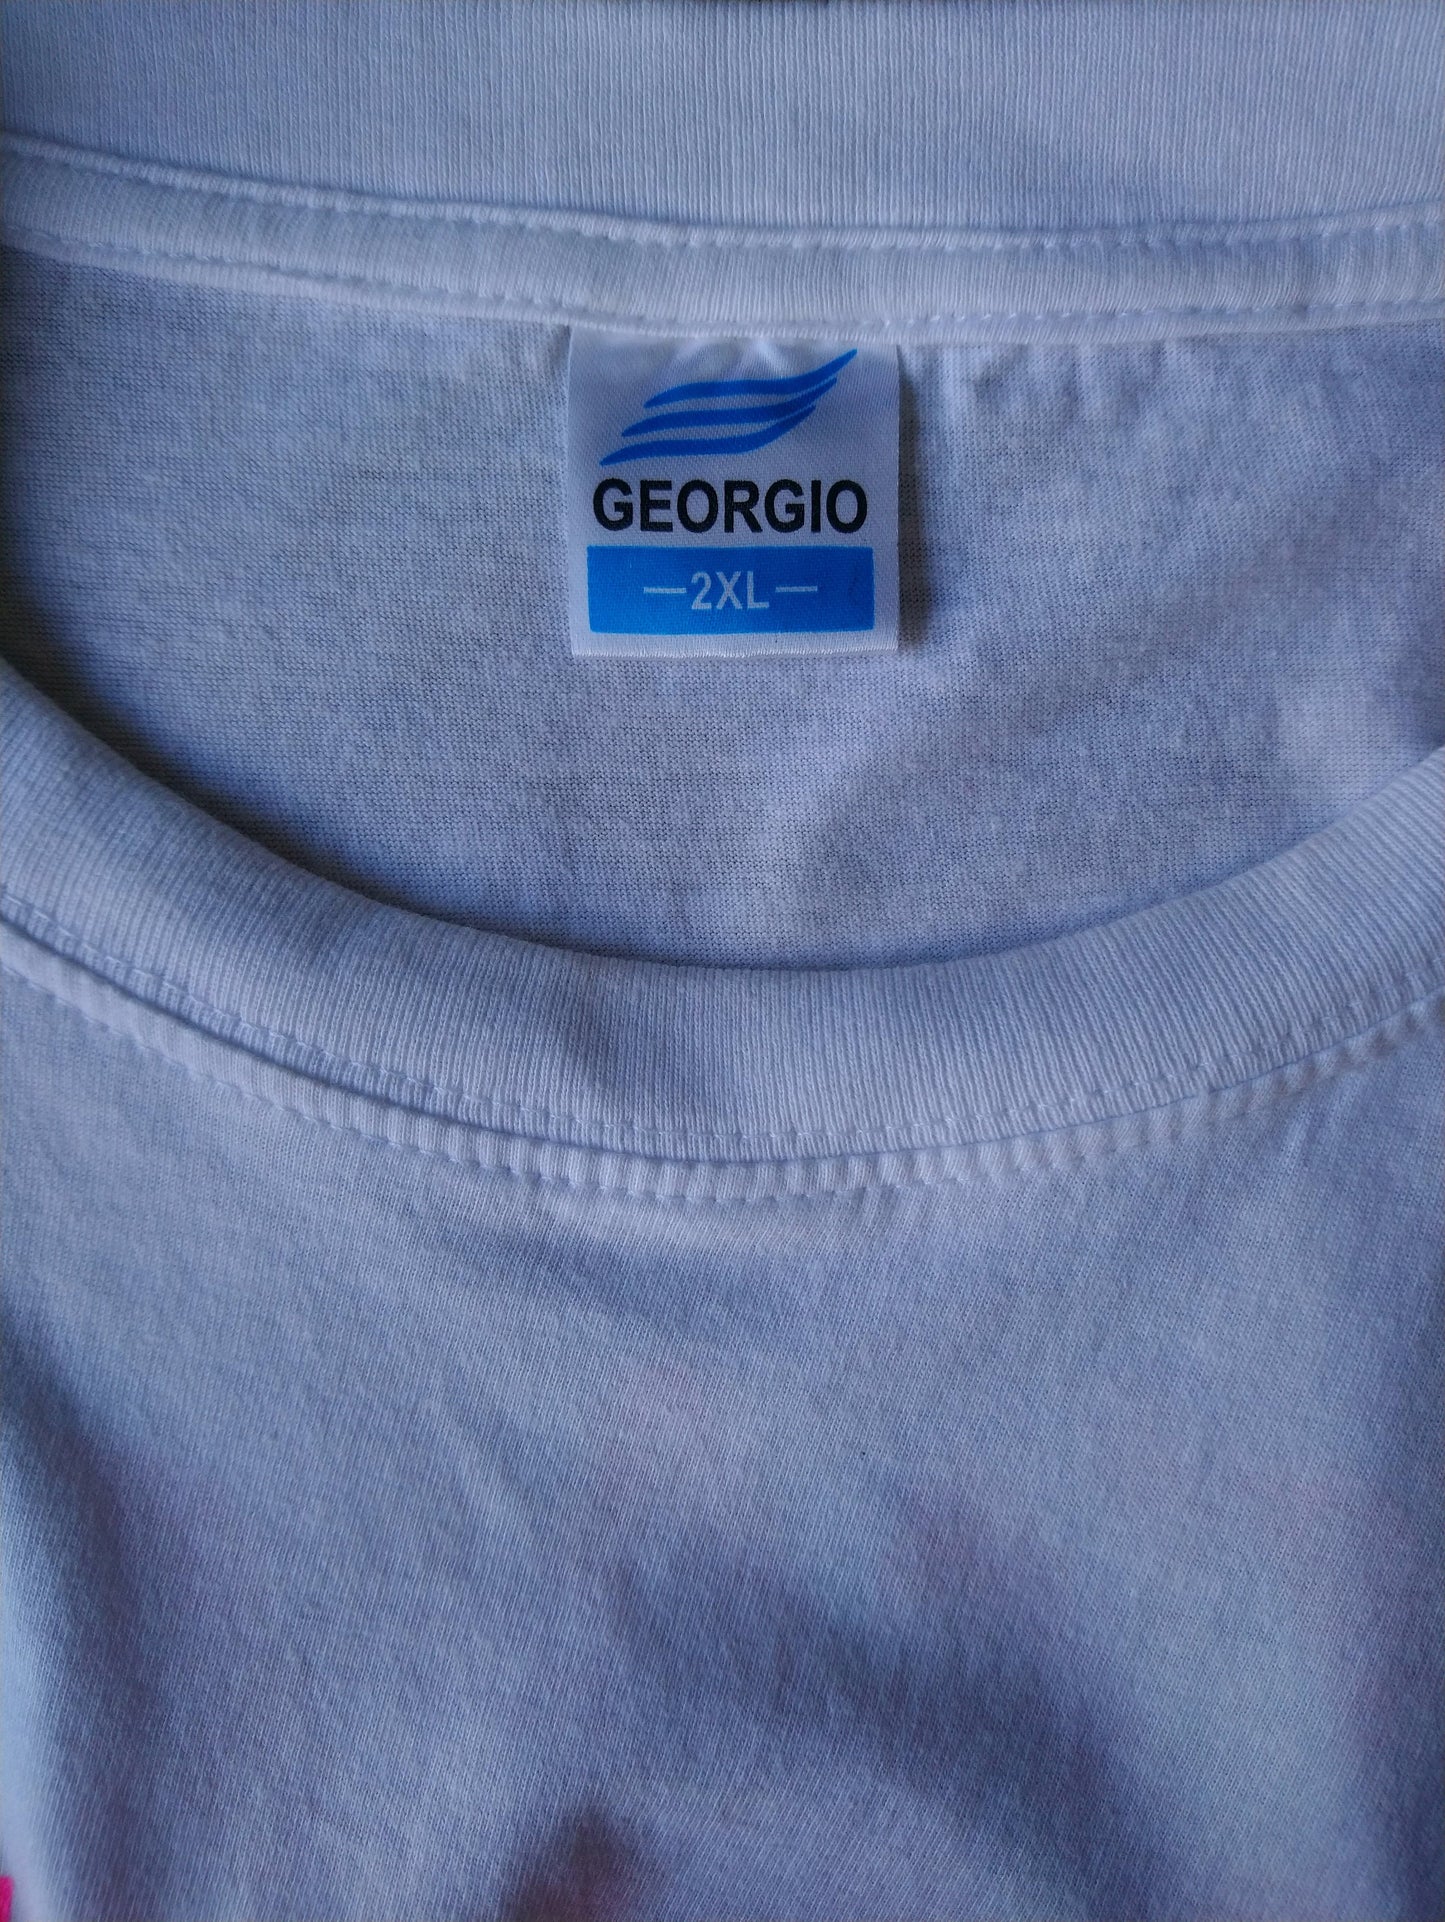 Georgio Shirt Napa. Weiß mit Druck. Größe xxl.